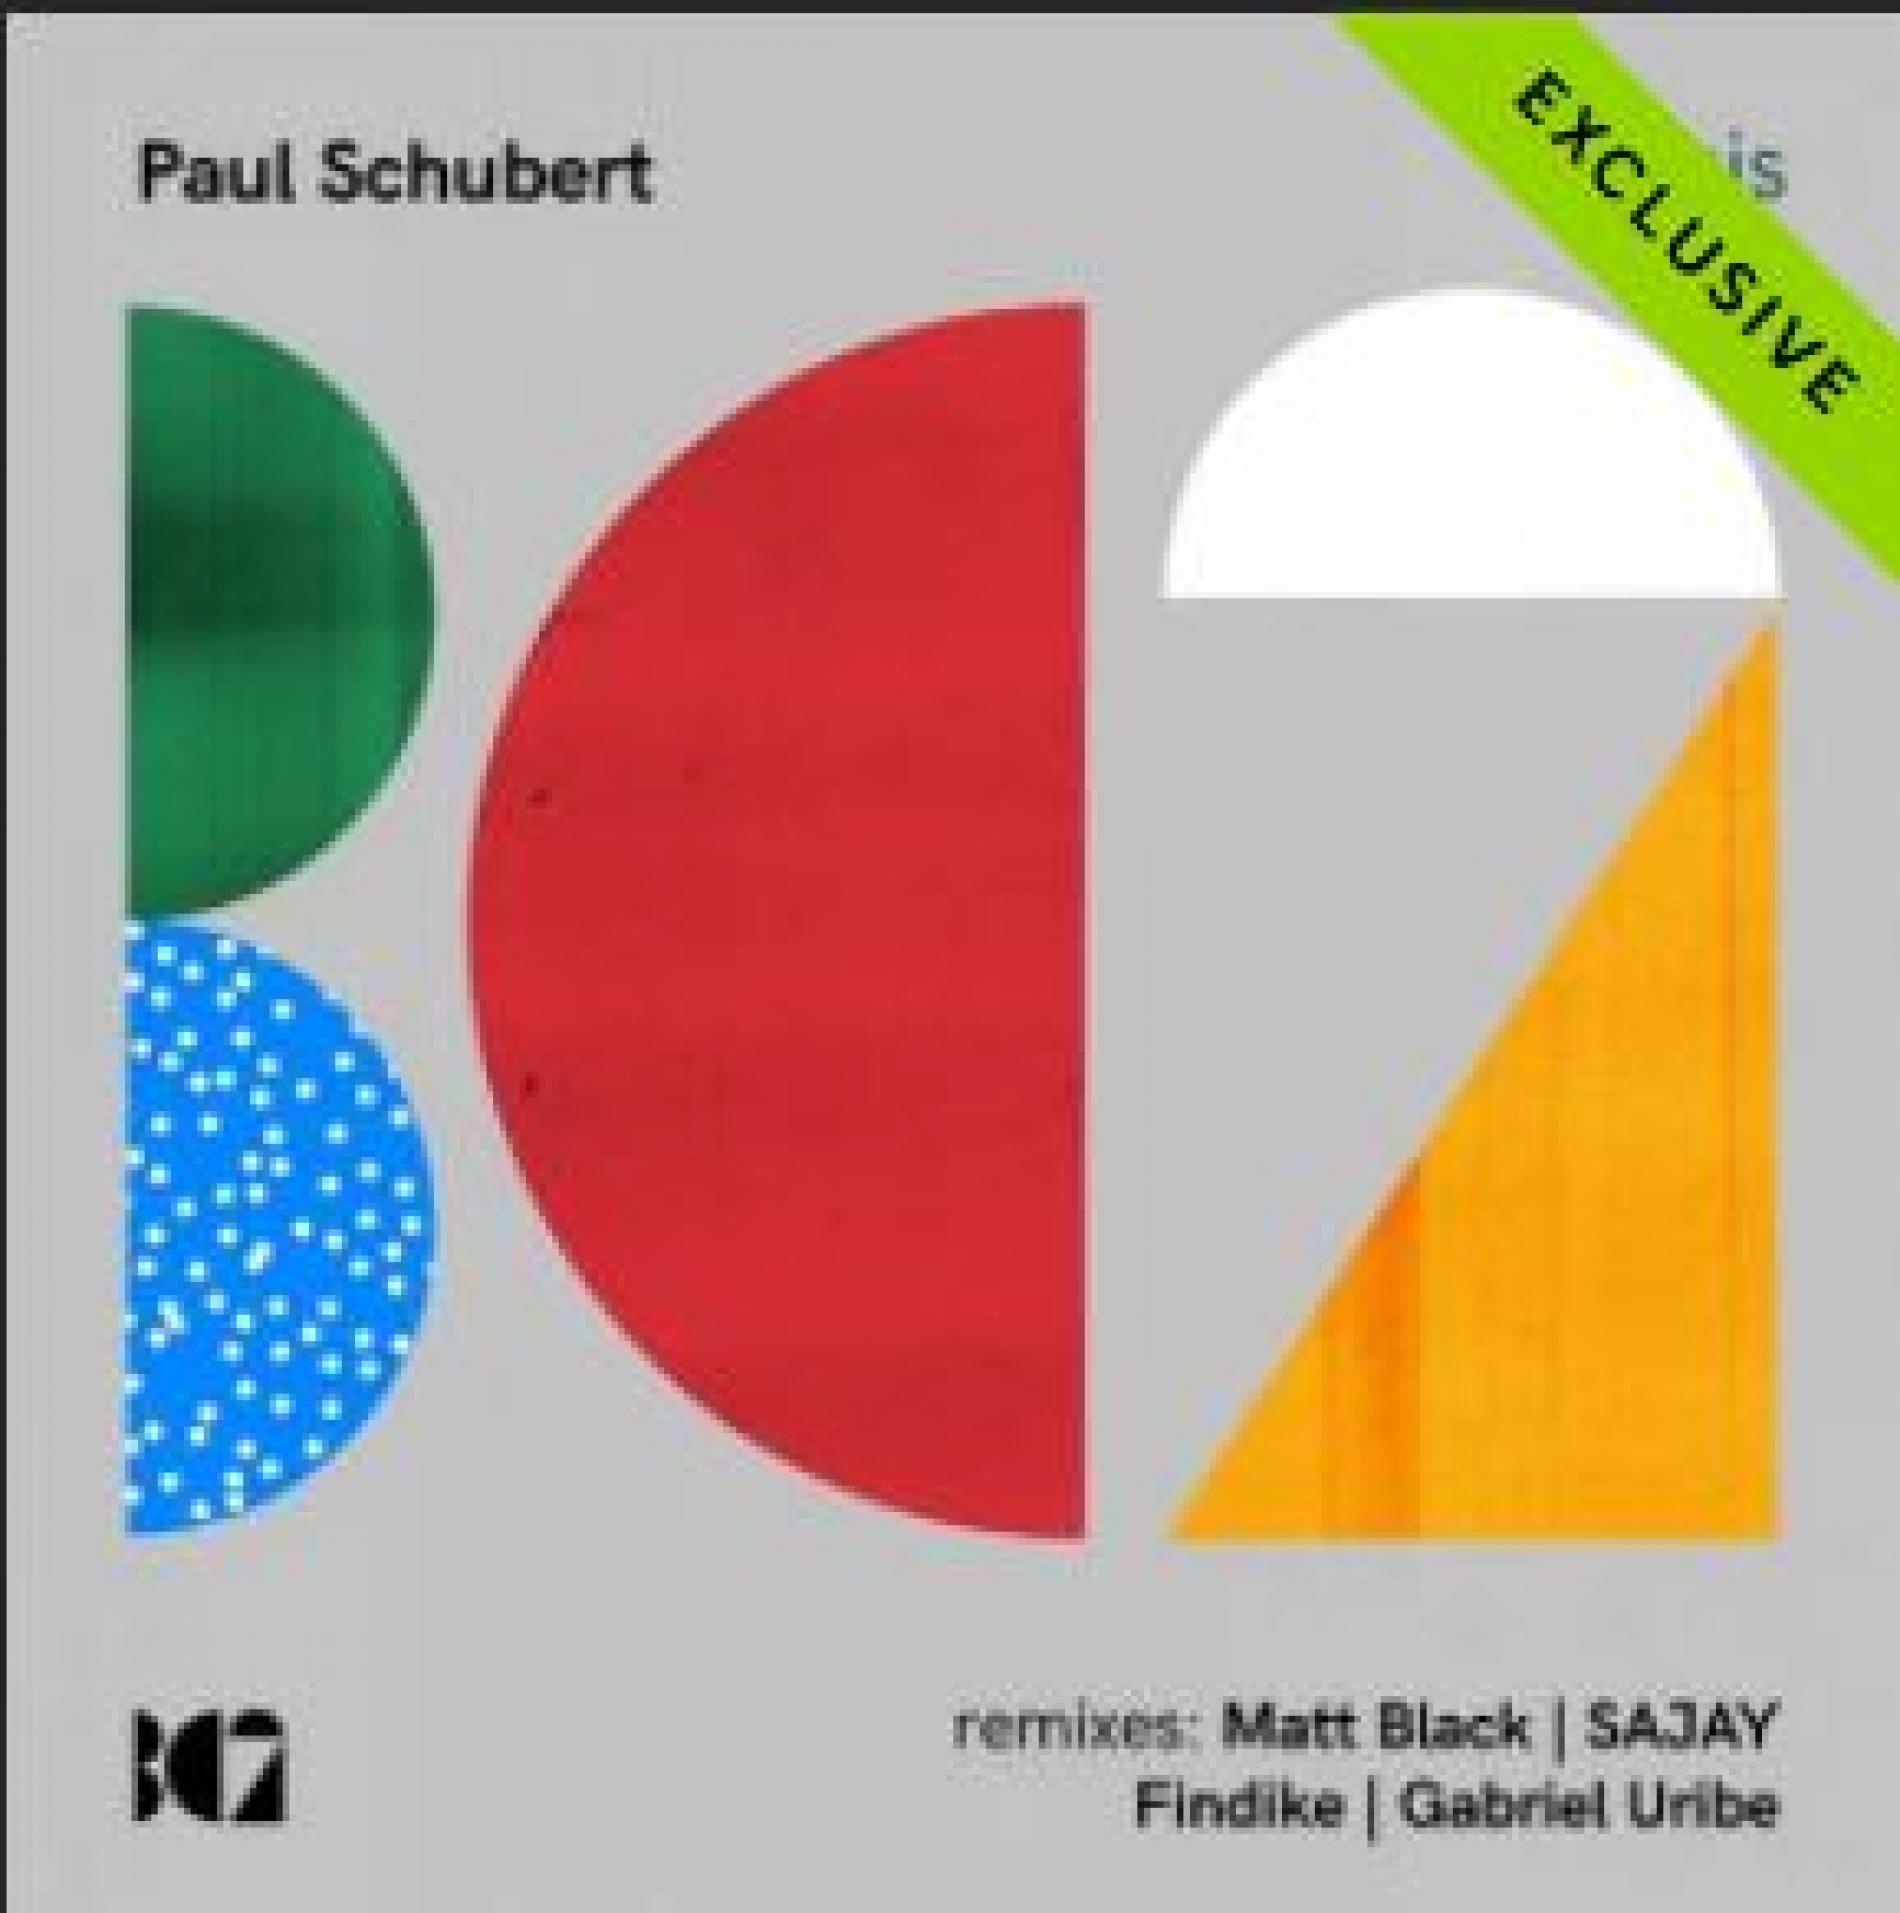 Paul Schubert – Gnosis (Sajay Remix)